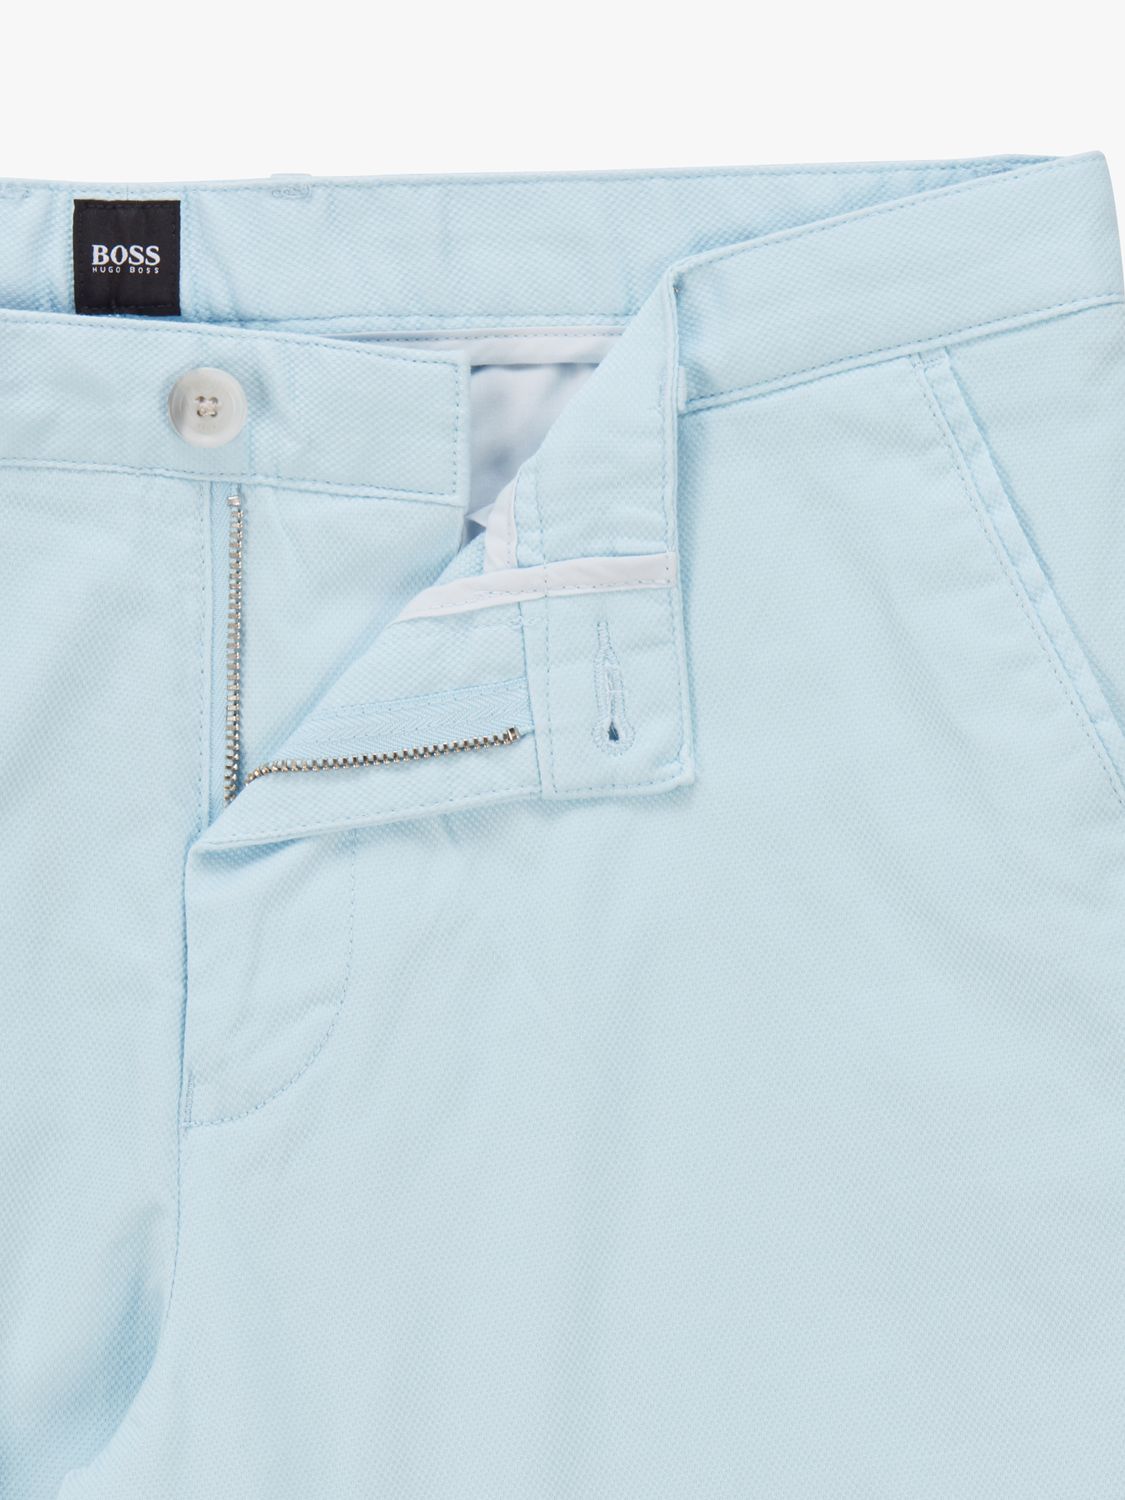 eenheid herstel opmerking BOSS Slice Slim Fit Chino Shorts, Pastel Blue at John Lewis & Partners